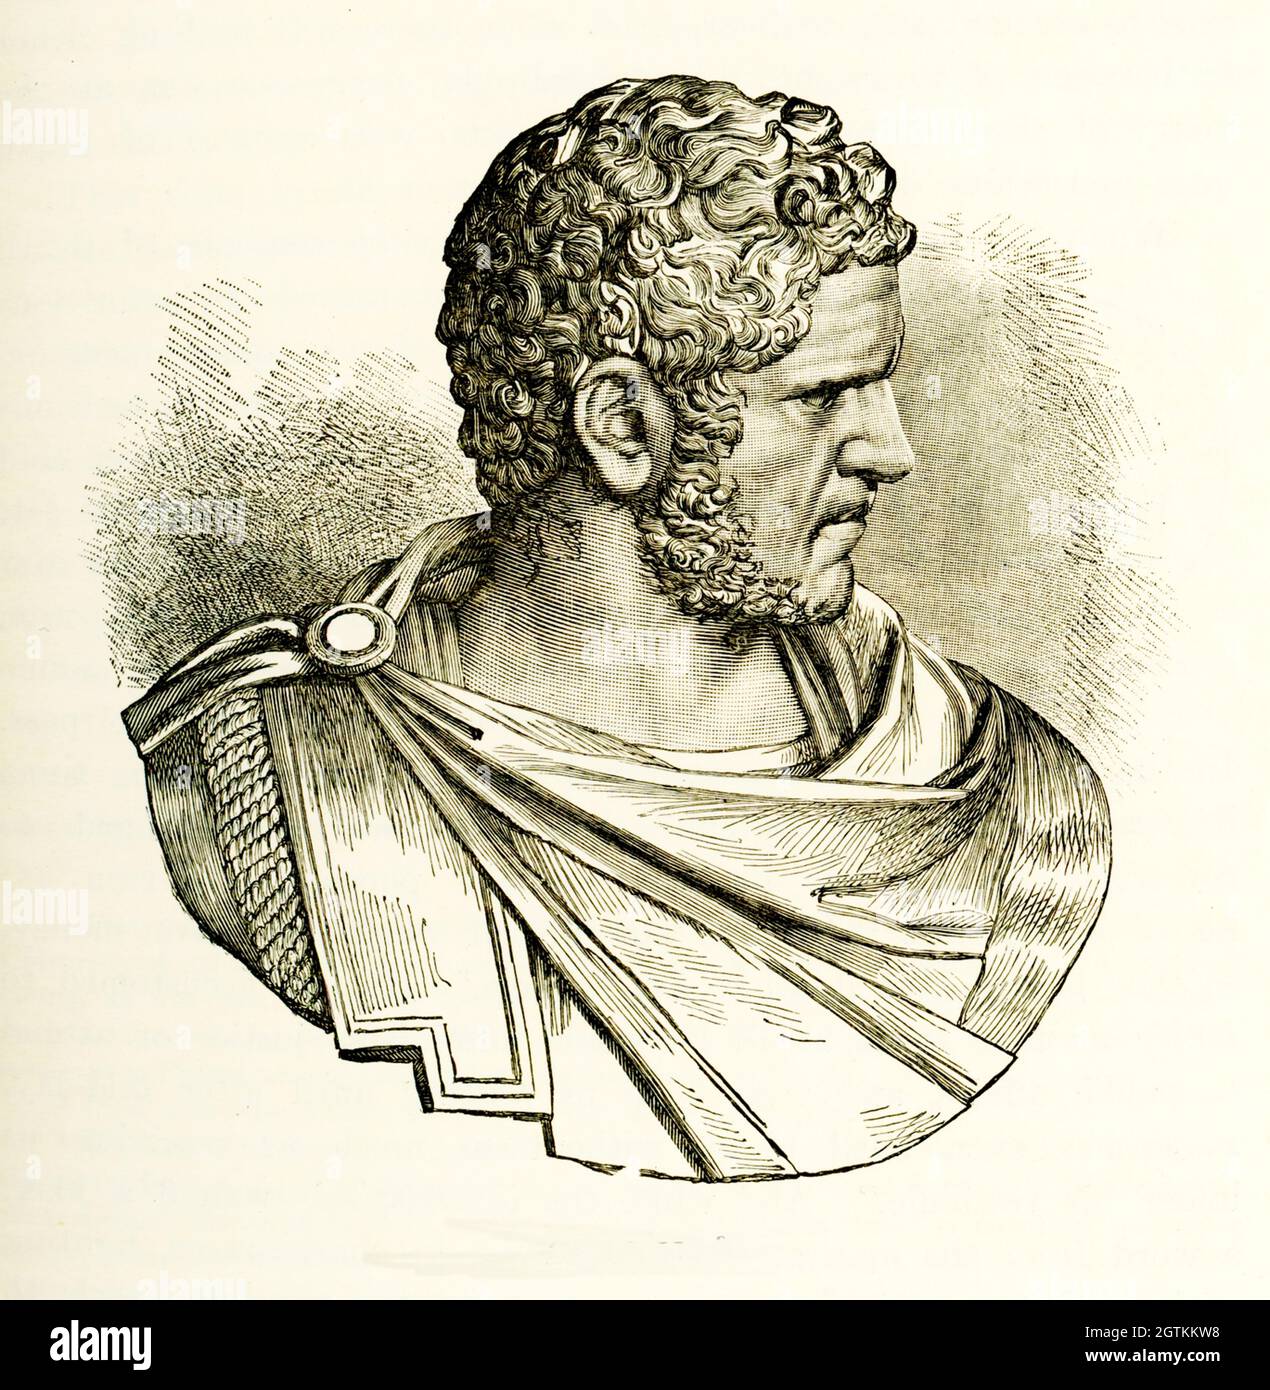 Caracalla, formal bekannt als Marcus Aurelius Antoninus, war von 198 bis 217 römischer Kaiser. Er war ein Mitglied der Severan-Dynastie, der ältere Sohn von Septimius Severus und Julia Domna. Seit 198 Co-Herrscher mit seinem Vater, setzte er nach dem Tod des Vaters im Jahr 211 die Herrschaft mit seinem Bruder Geta fort, Kaiser von 209. Stockfoto